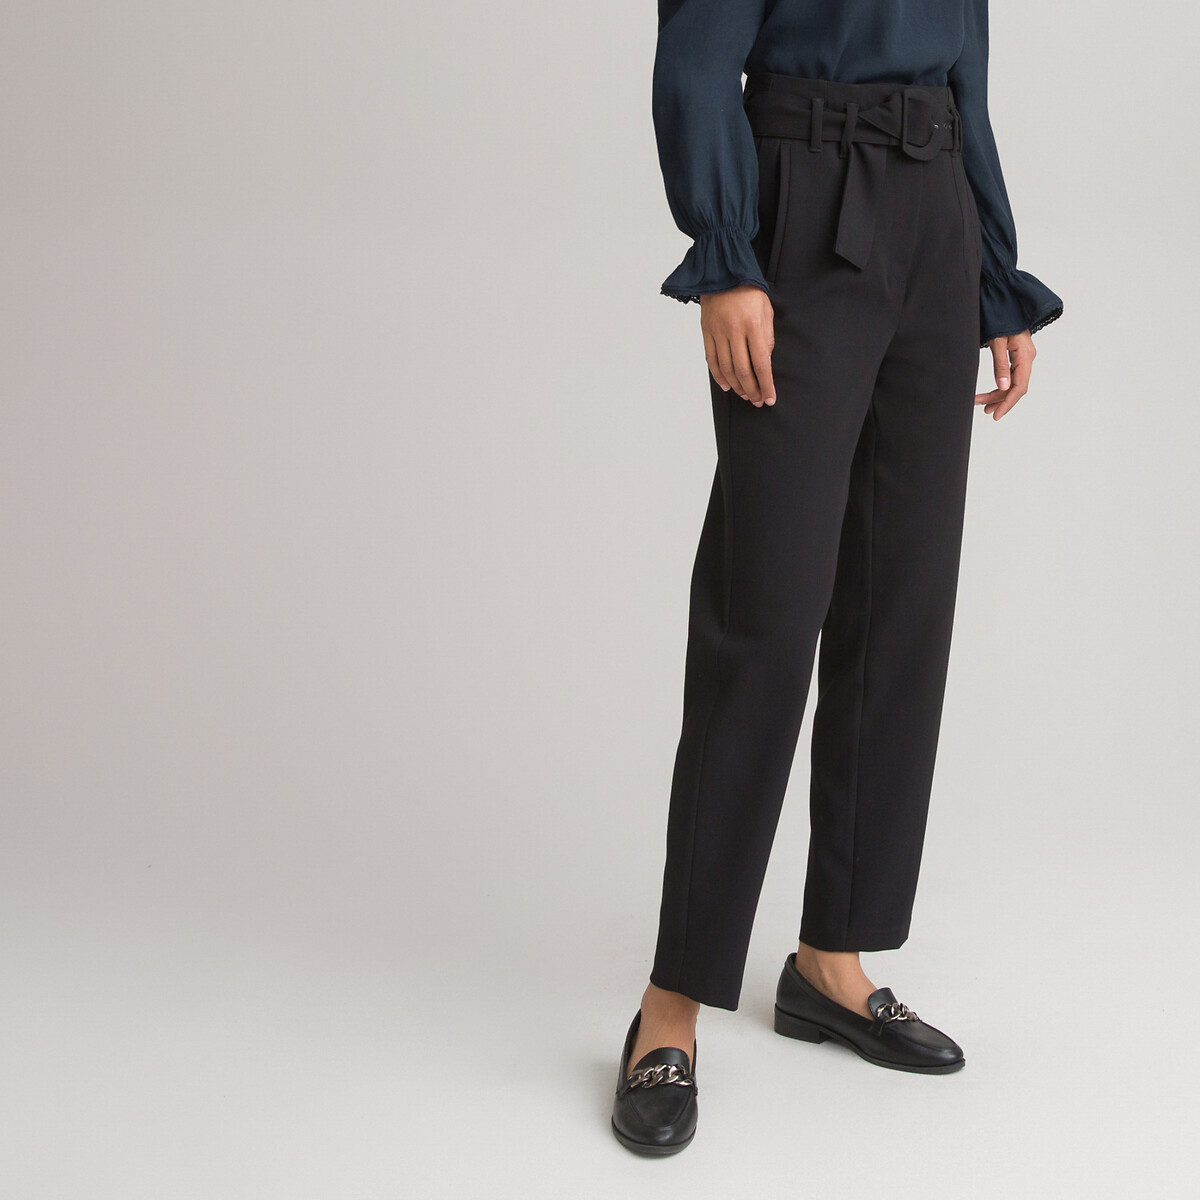 Omkleden insluiten Knorretje Strakke broek, hoge taille zwart La Redoute Collections | La Redoute